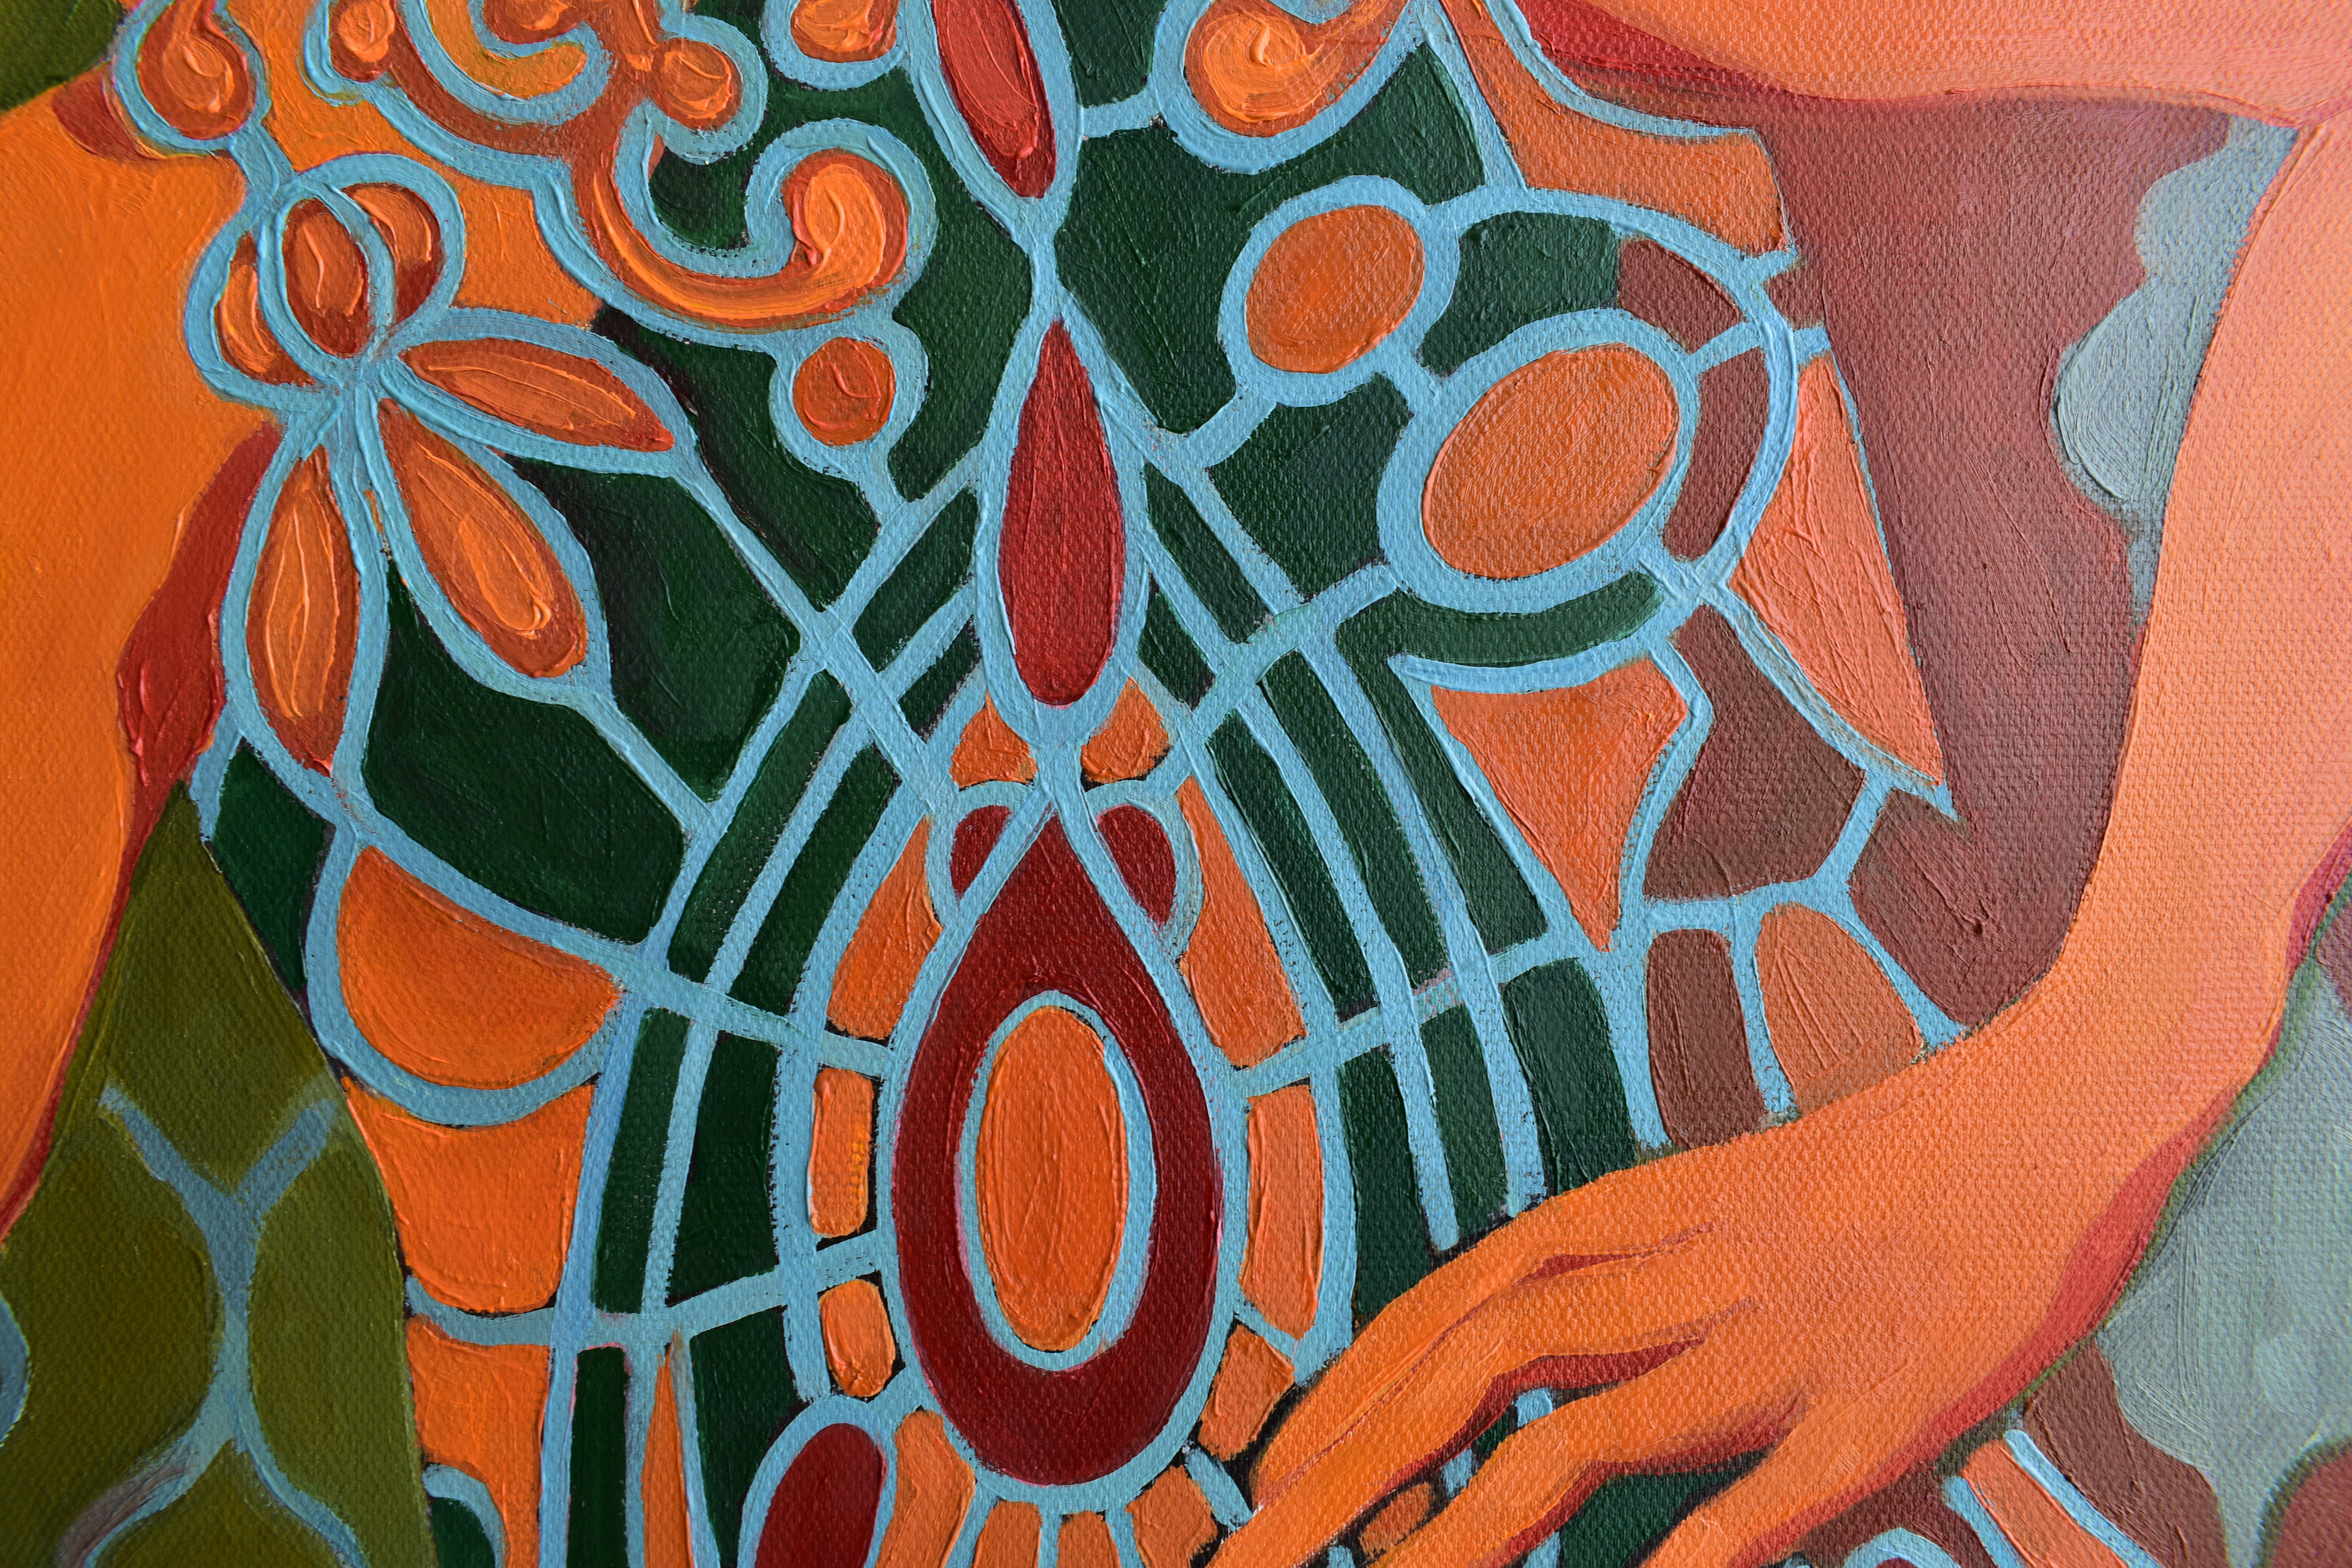 Painting by Marina Venediktova STONE GARDEN detail